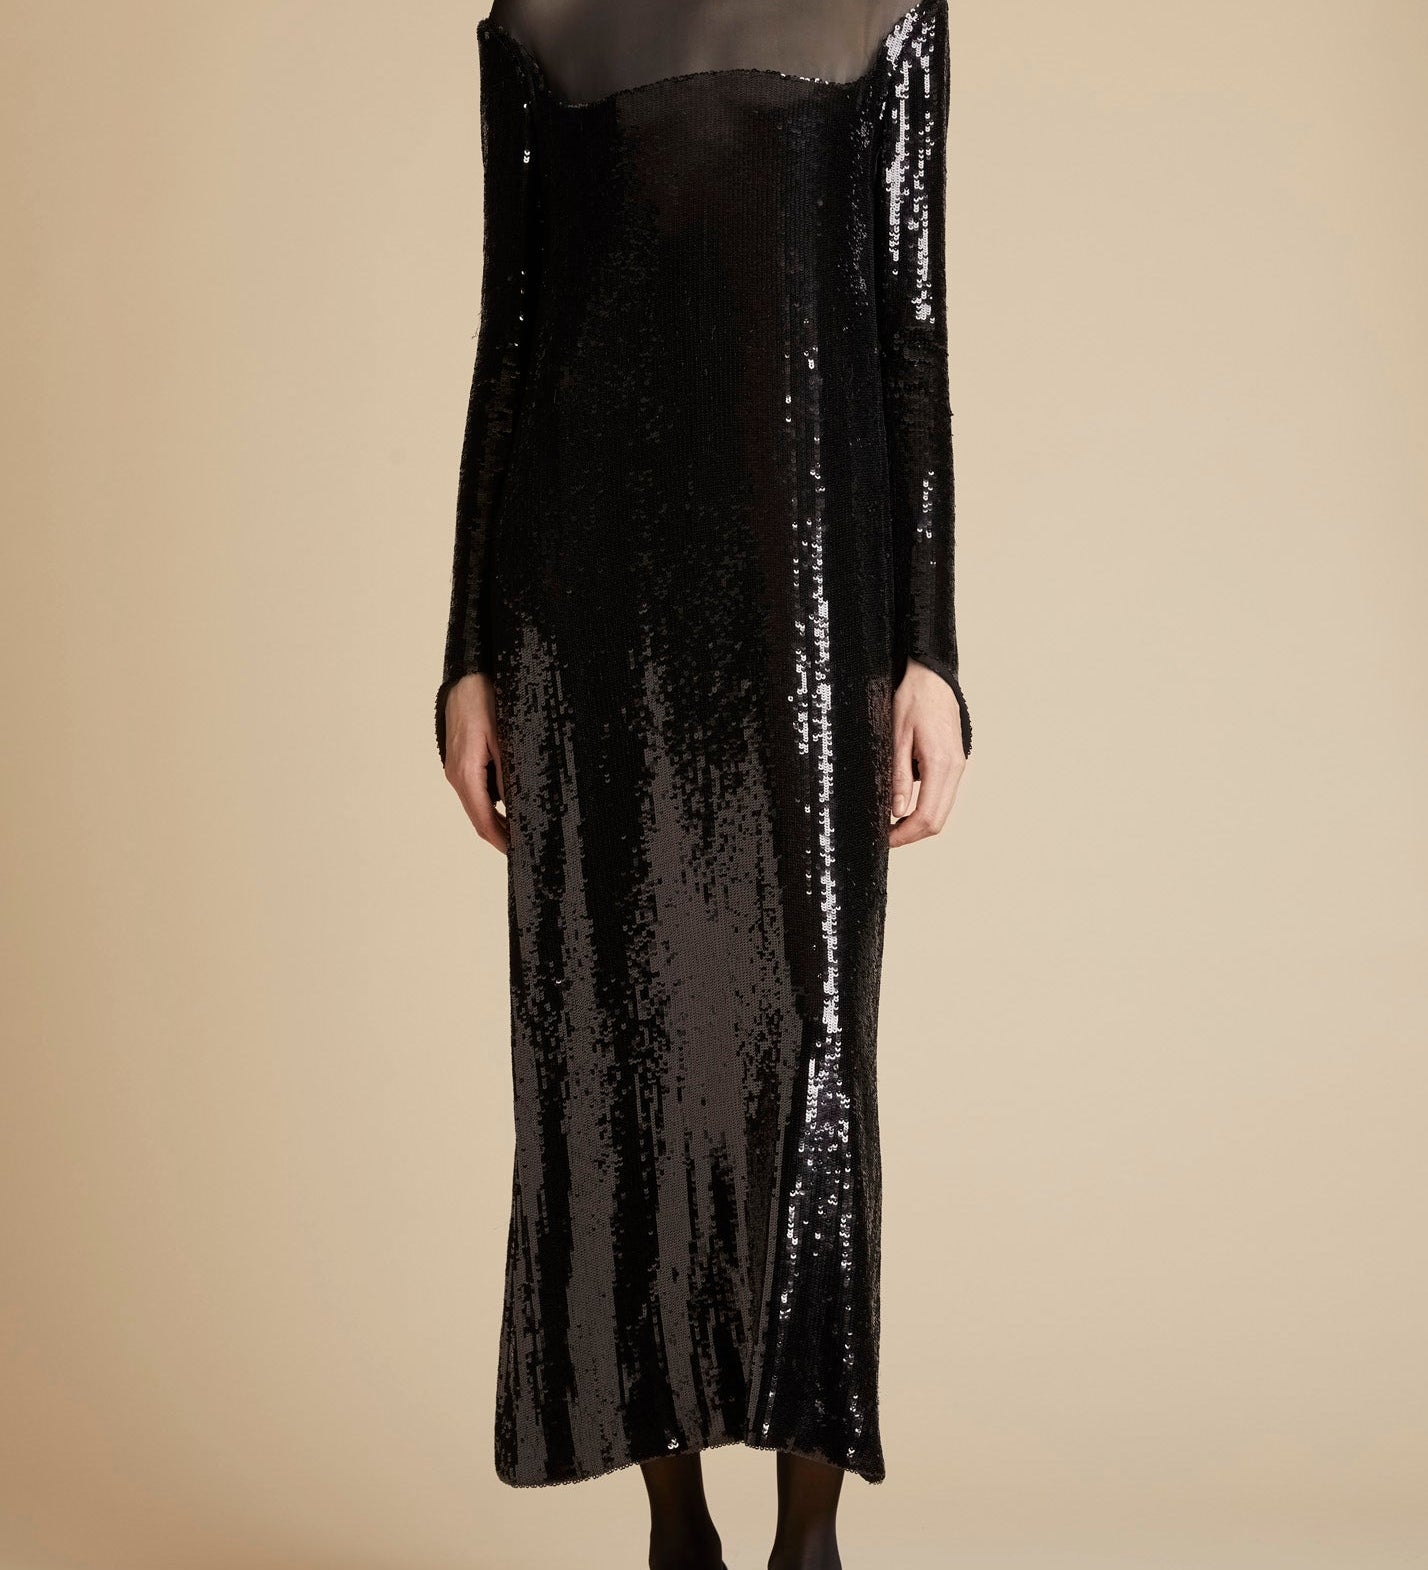 Khaite The Leibel Dress in Black Sequin